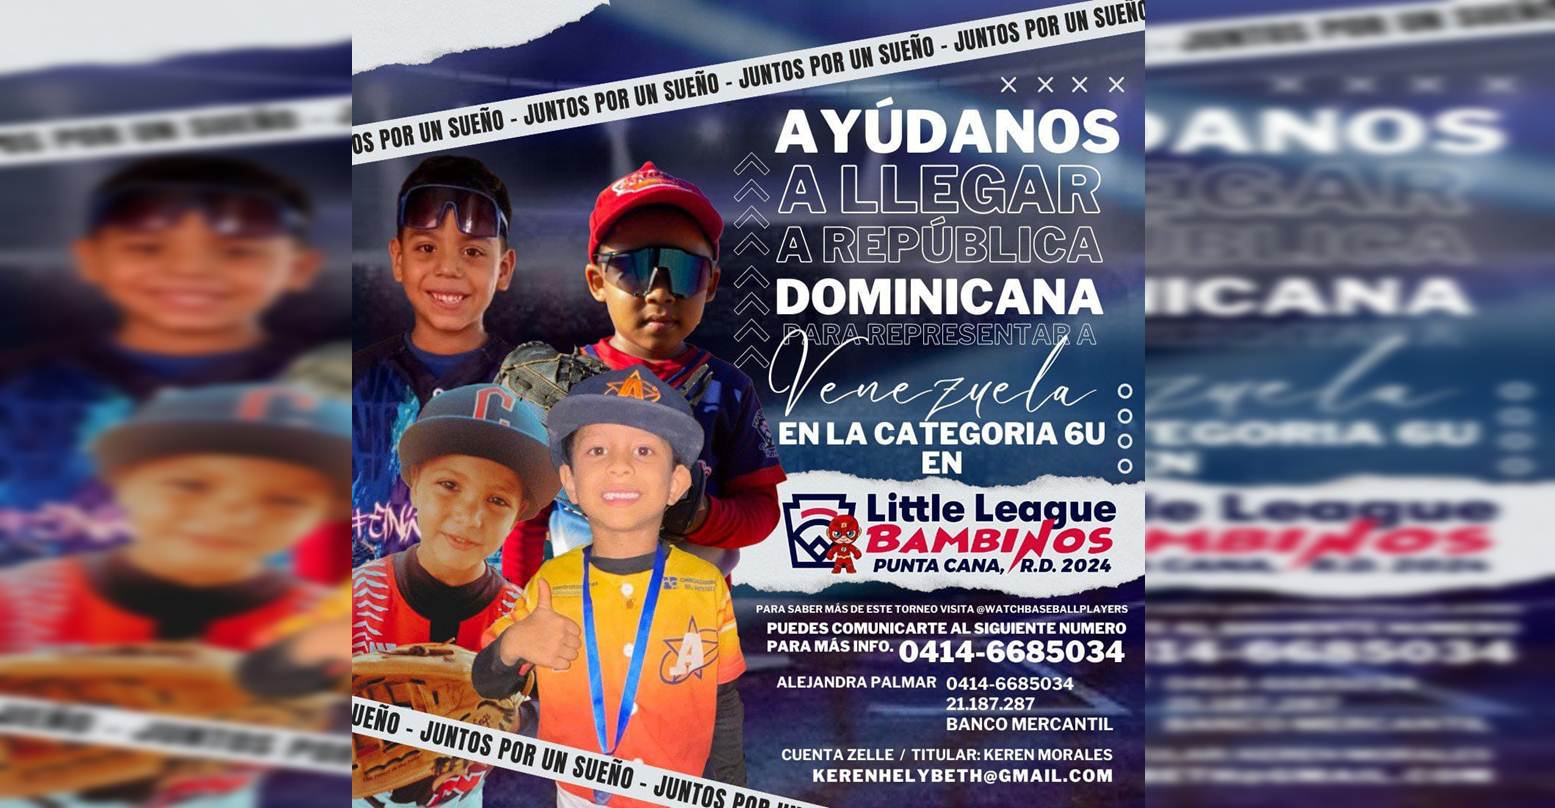 ¡JUNTOS POR UN SUEÑO! Estos niños necesitan tu apoyo para representar a Venezuela en un torneo internacional de béisbol